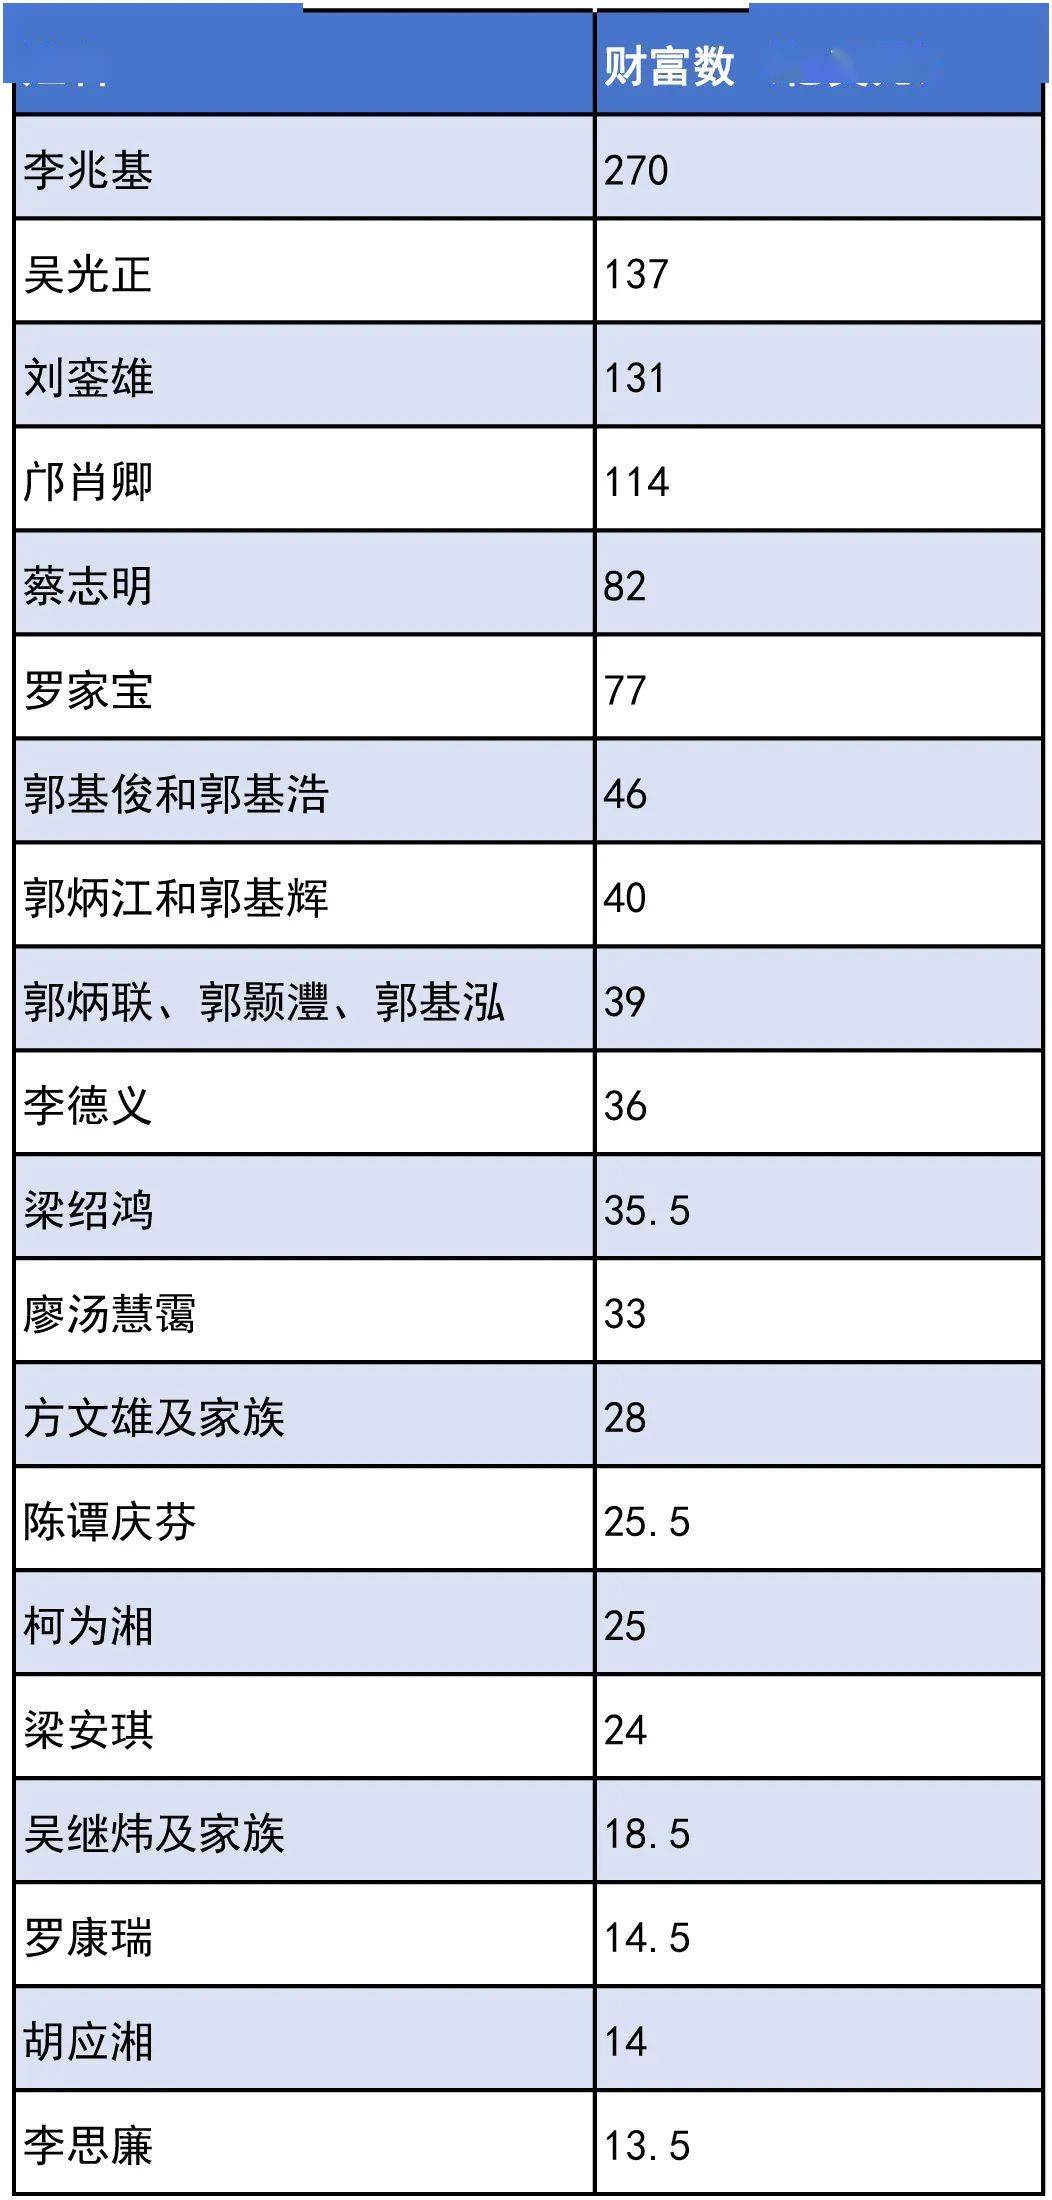 福布斯香港富豪榜发布 20位地产大亨上榜丨焦点